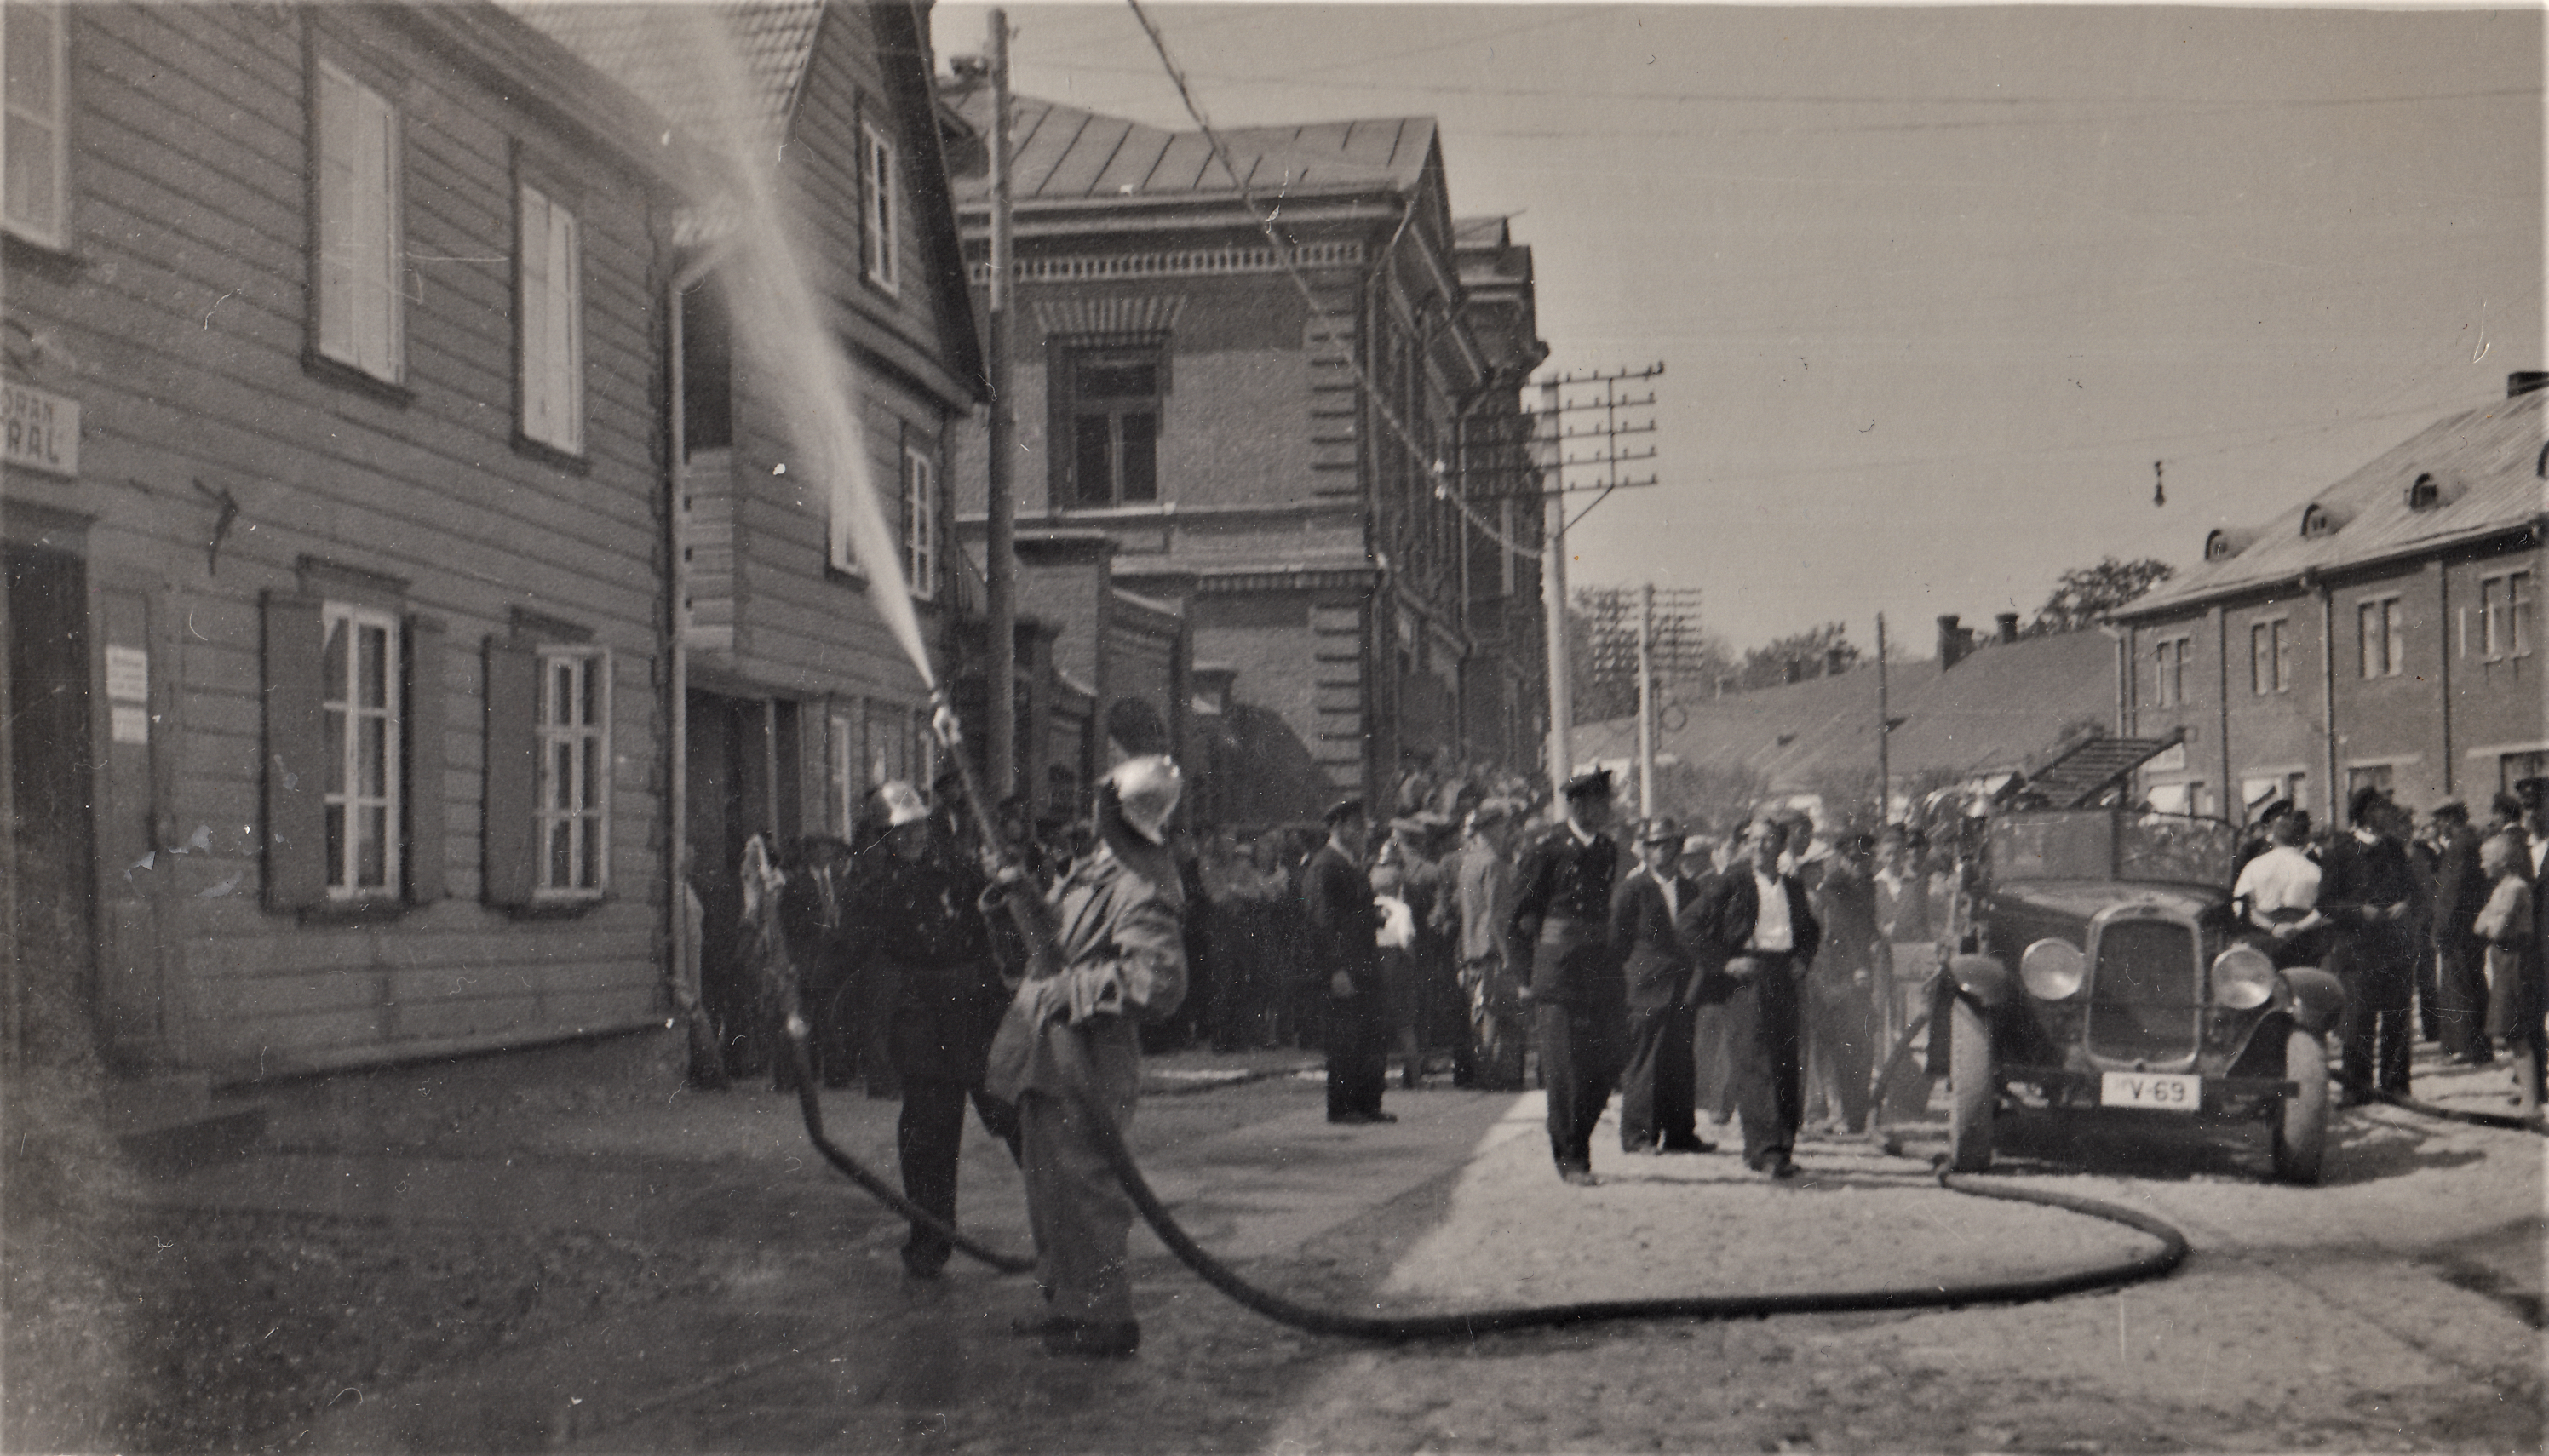 Põltsamaa vanadel fotodel: Pritsumeeste pidupäev juuli 1938 (II OSA). Fotograaf A. Sulev. Foto erakogust.